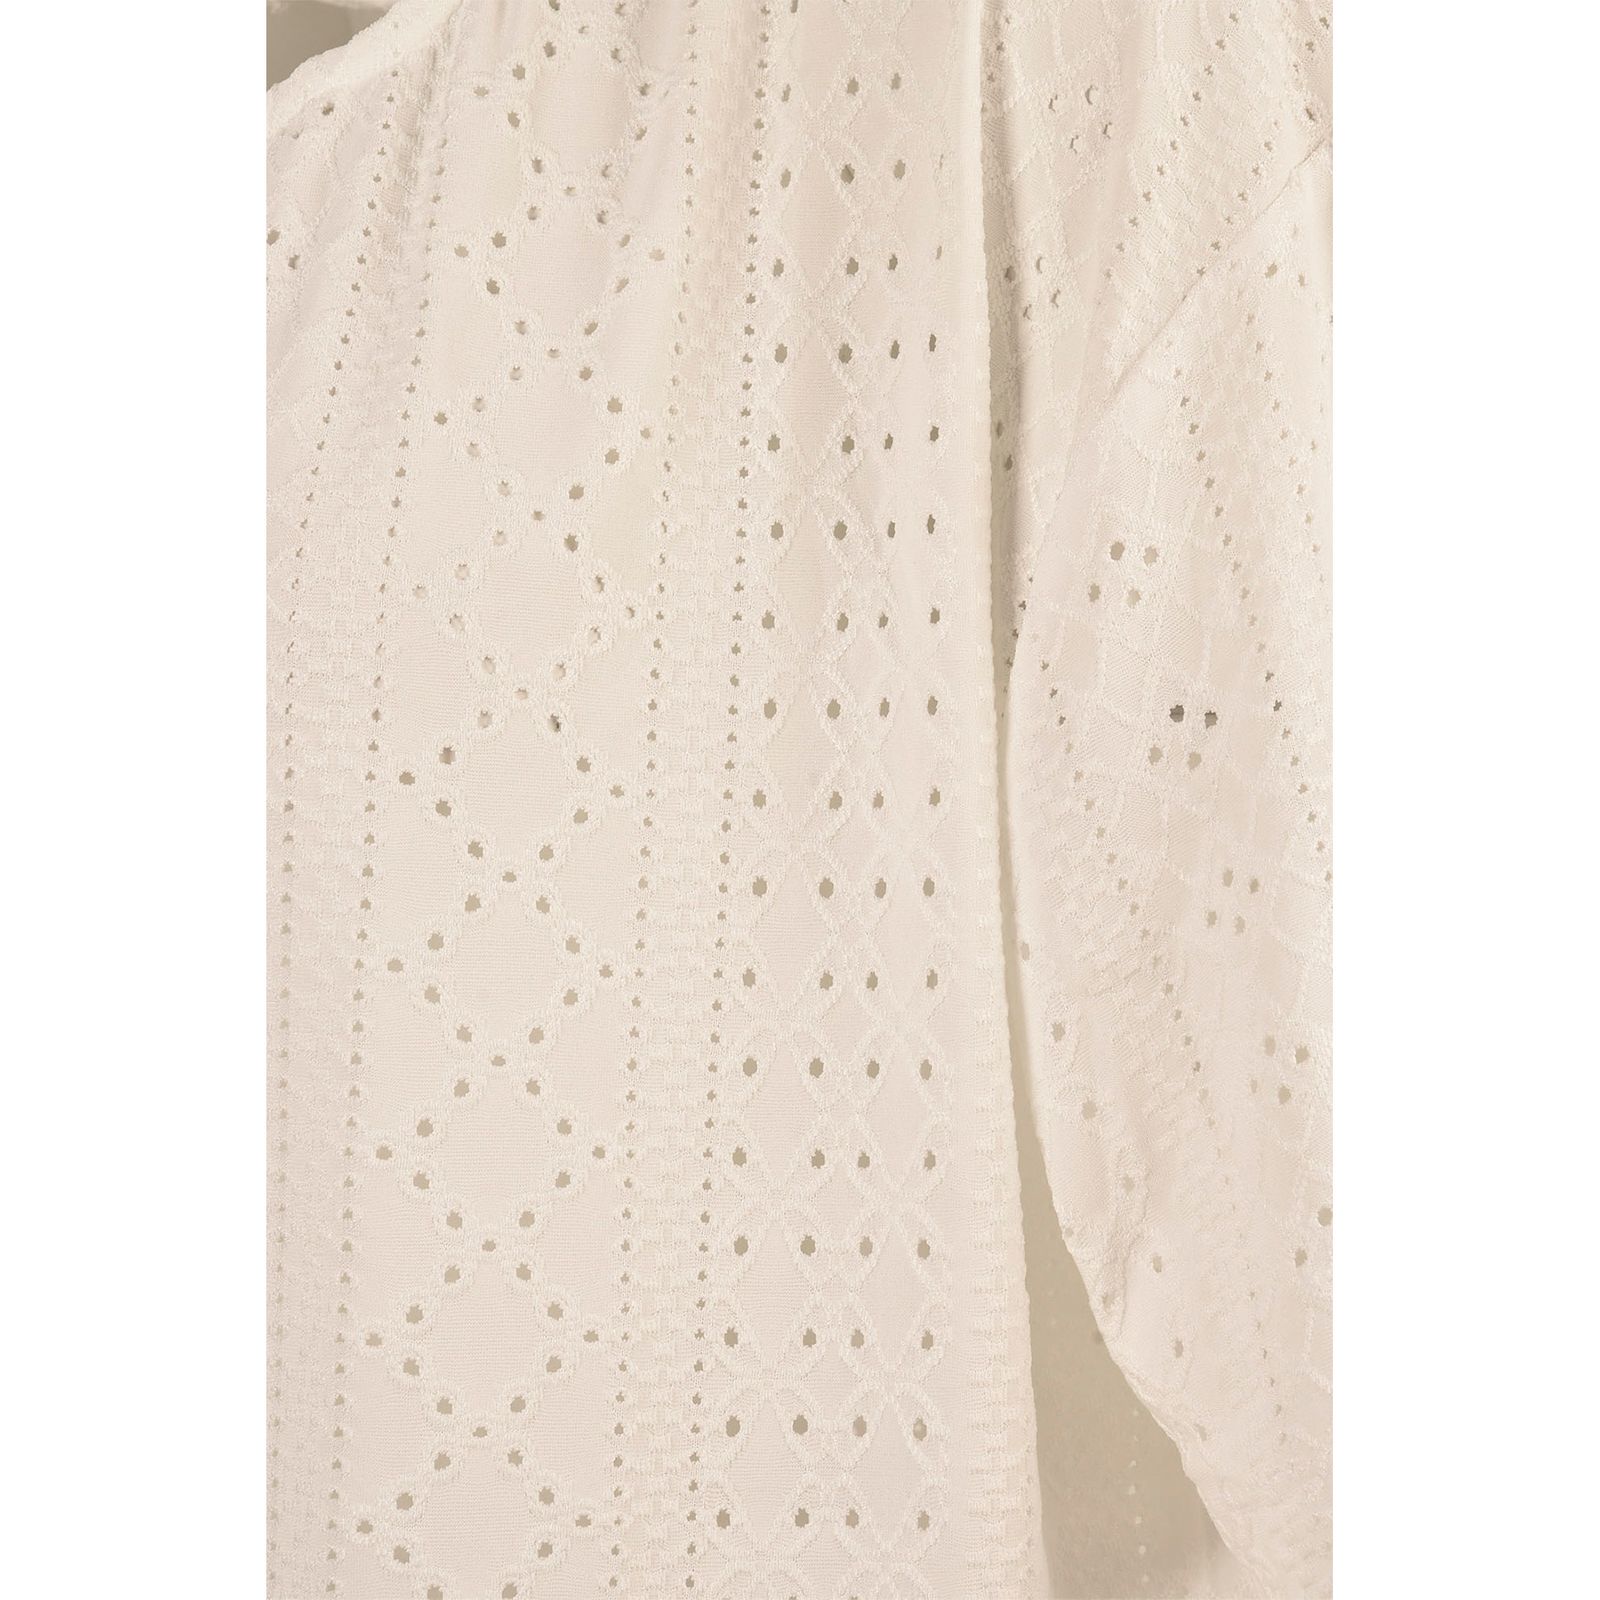 بلوز آستین کوتاه زنانه بادی اسپینر مدل 3304 کد 1 رنگ سفید -  - 4